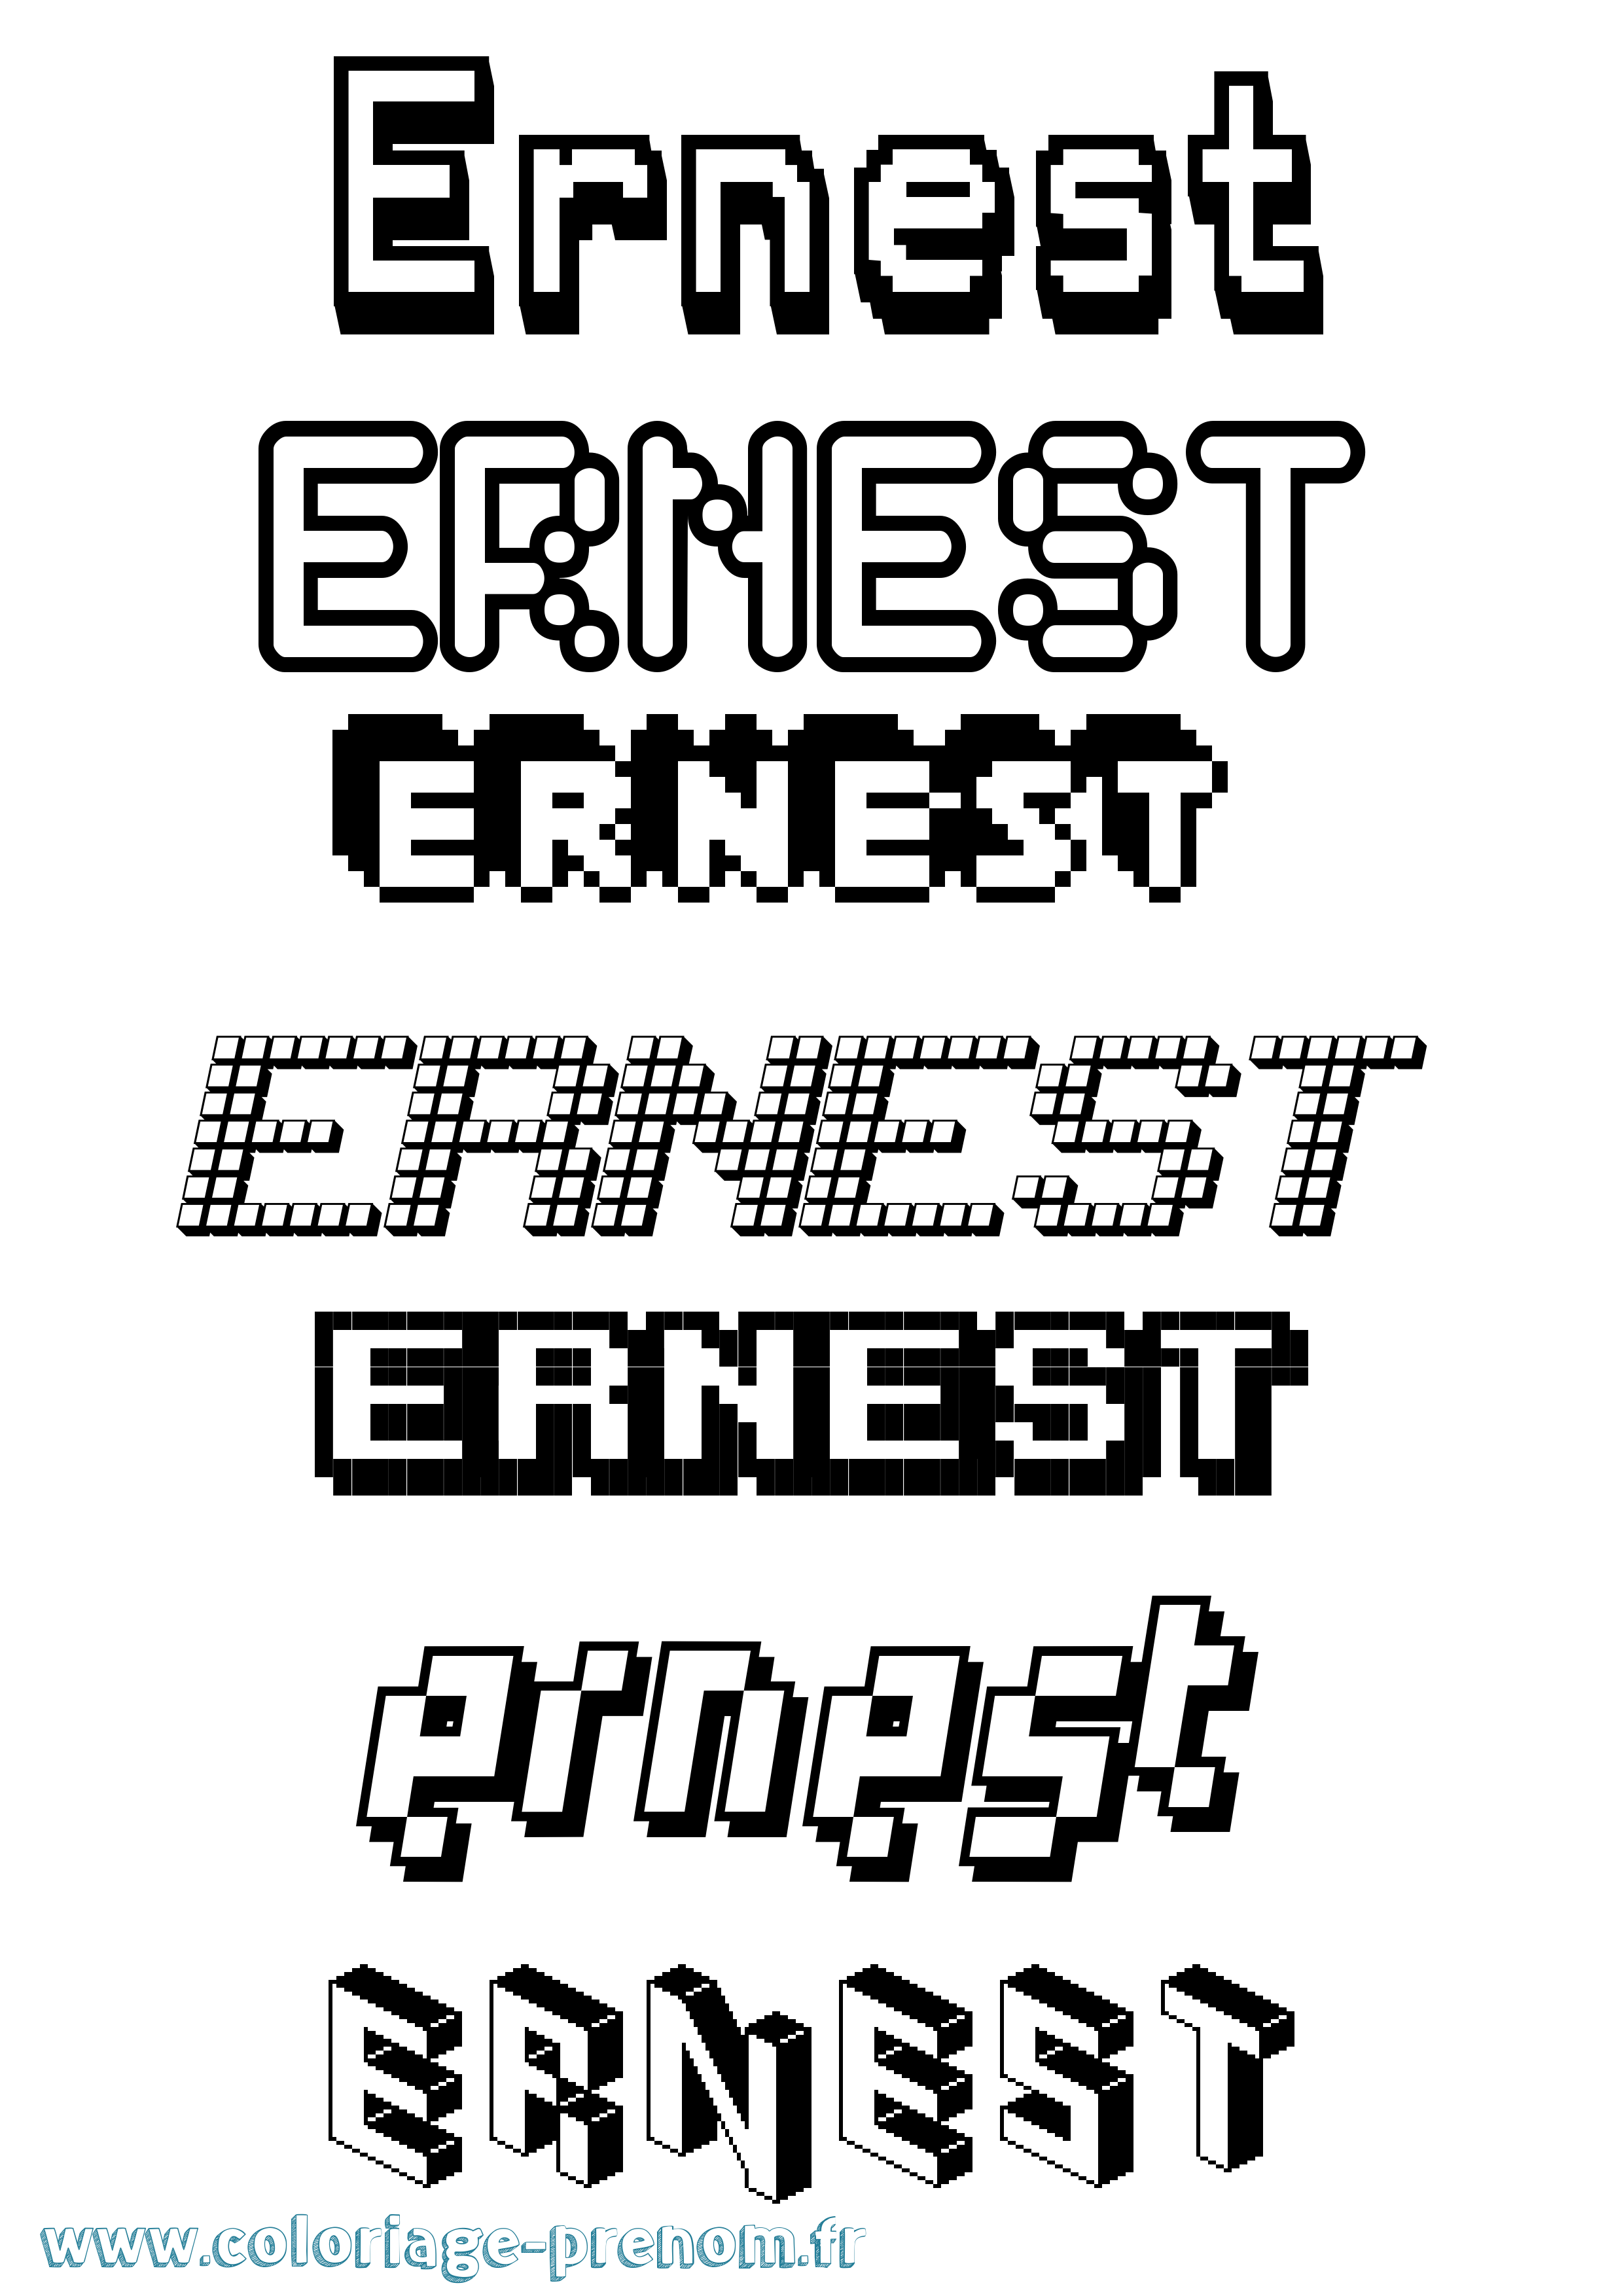 Coloriage prénom Ernest Pixel